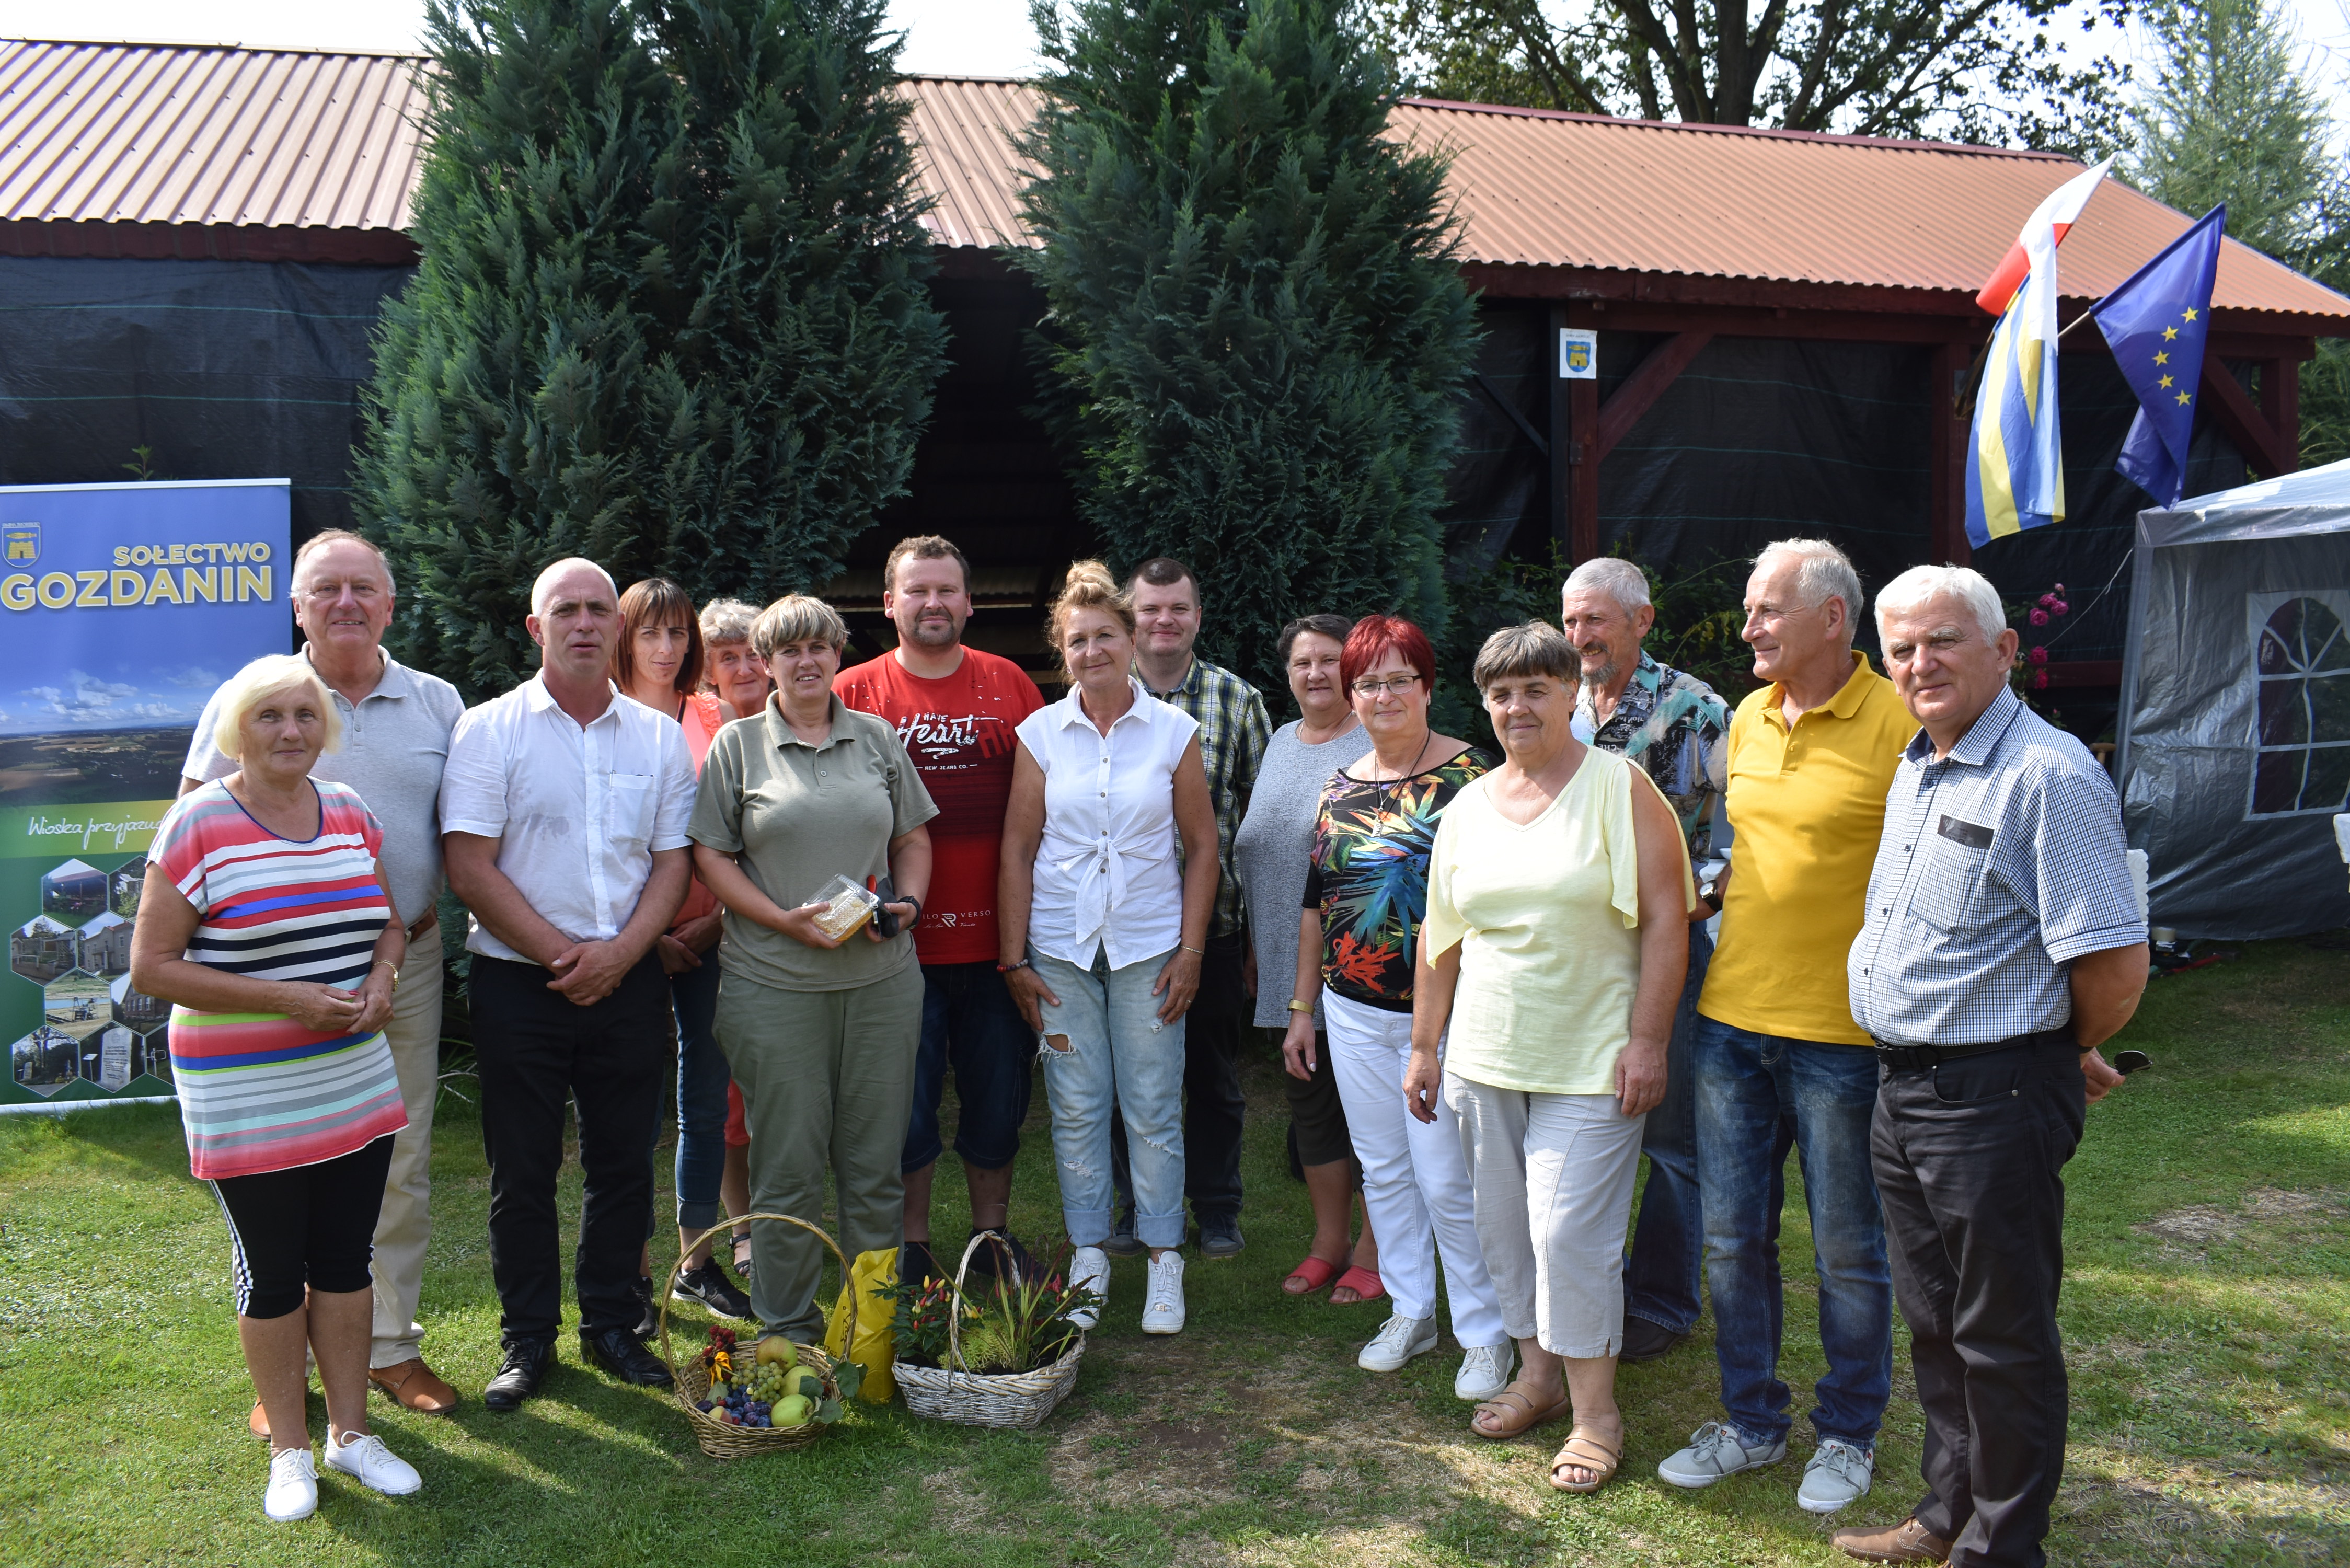 Warsztaty w Gozdaninie: Posadzono ponad 100 drzew!